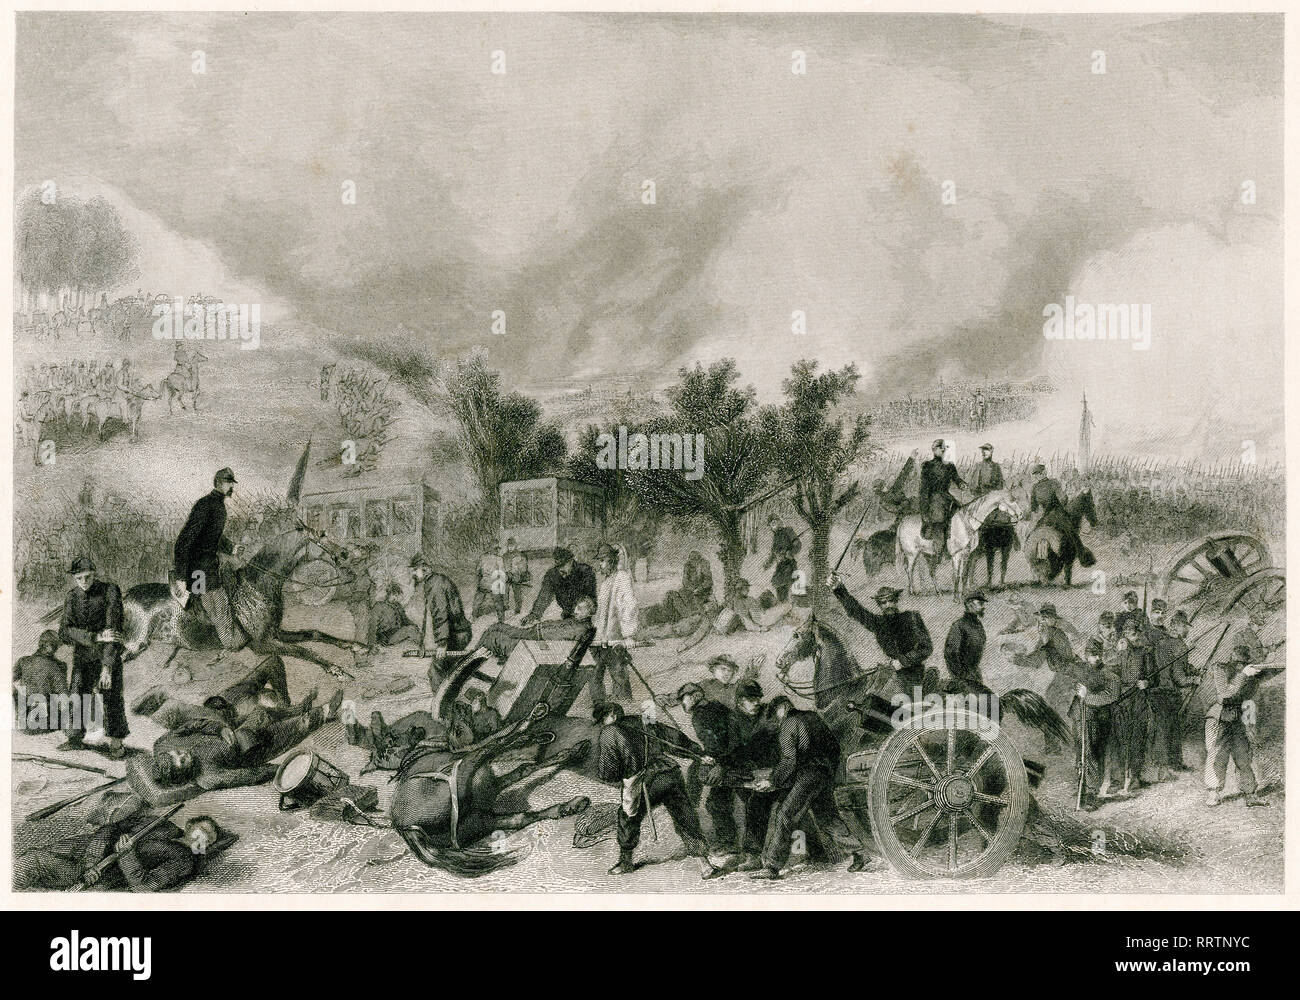 Battaglia di Gettysburg, Guerra civile americana, incisione in acciaio di Alonzo Chappel, 1864 Foto Stock